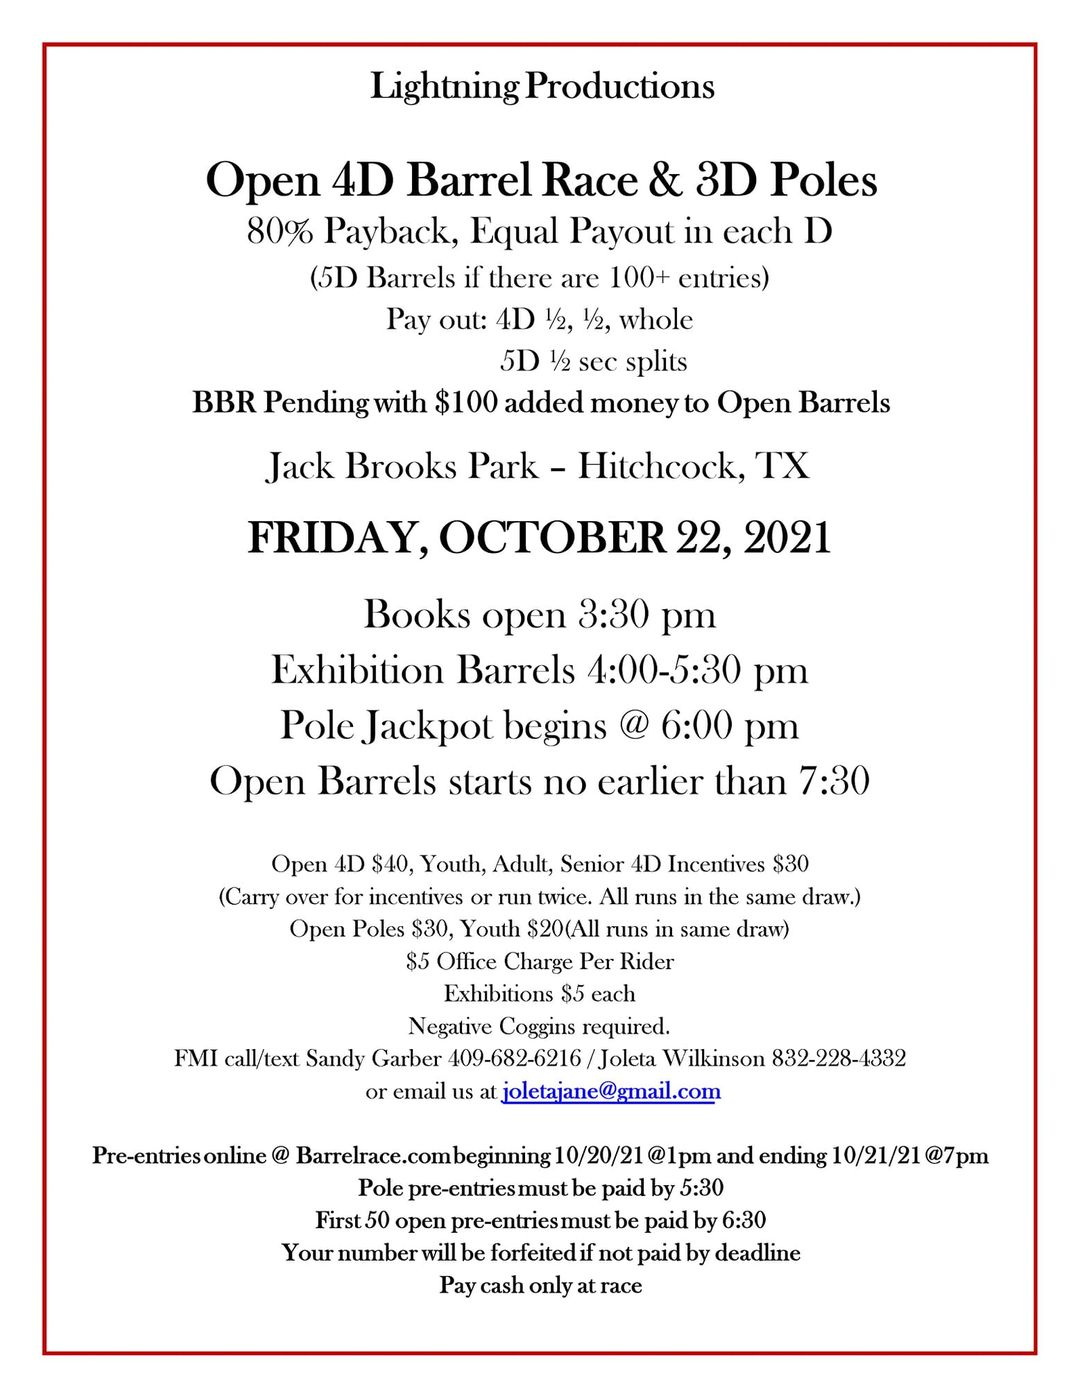 Open 4D Barrel Race & 3D Poles